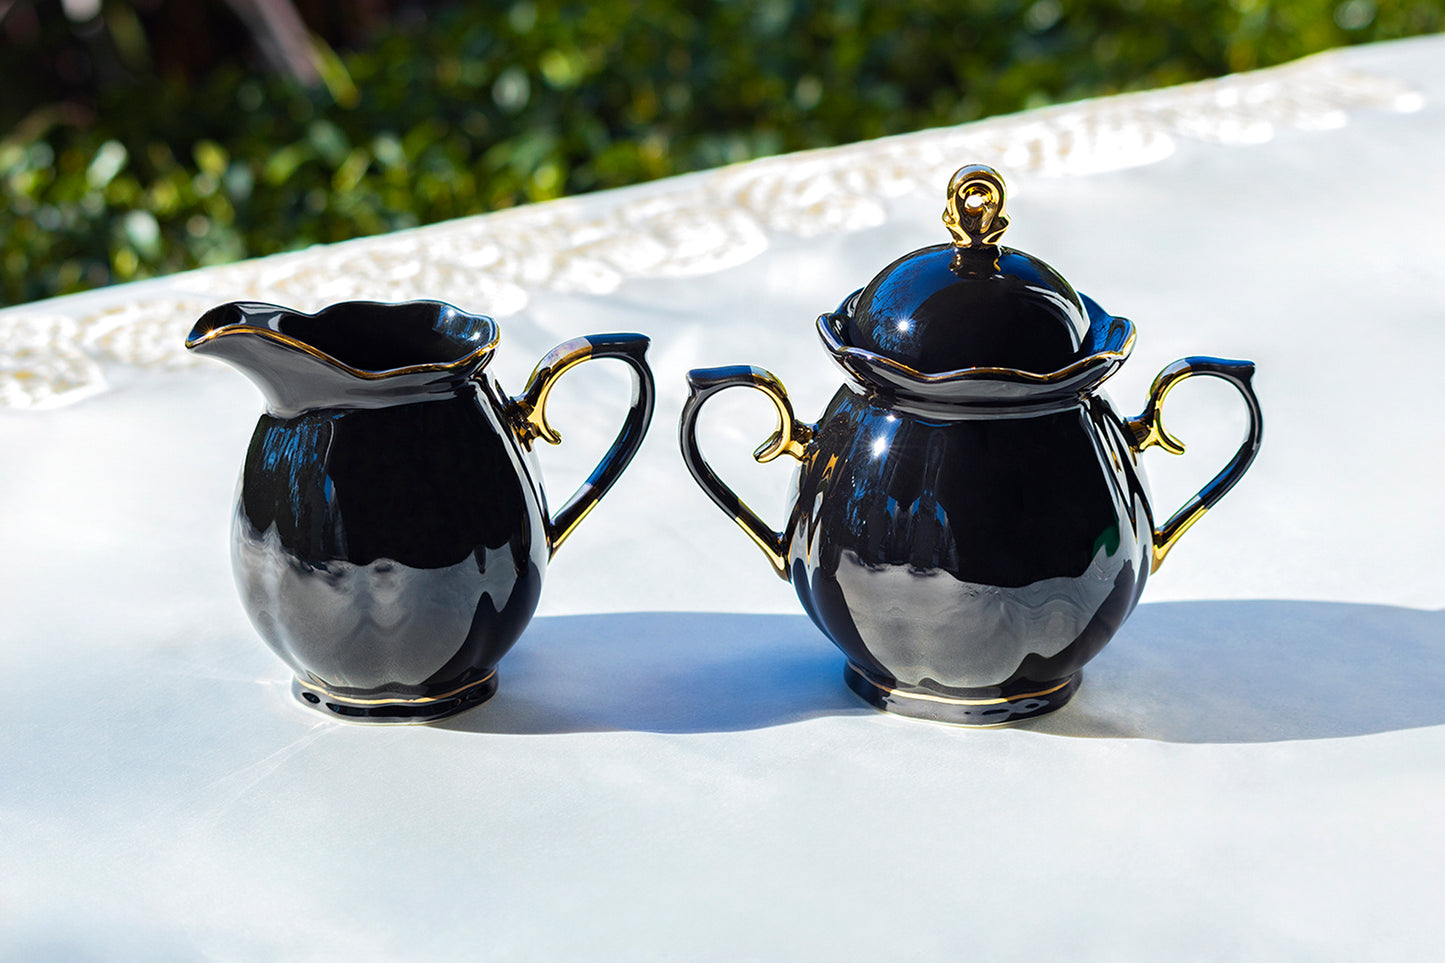 Black Gold Teapot + Sugar Creamer + 4 Skull Black Gold Luster Tea Cup and Saucer Sets